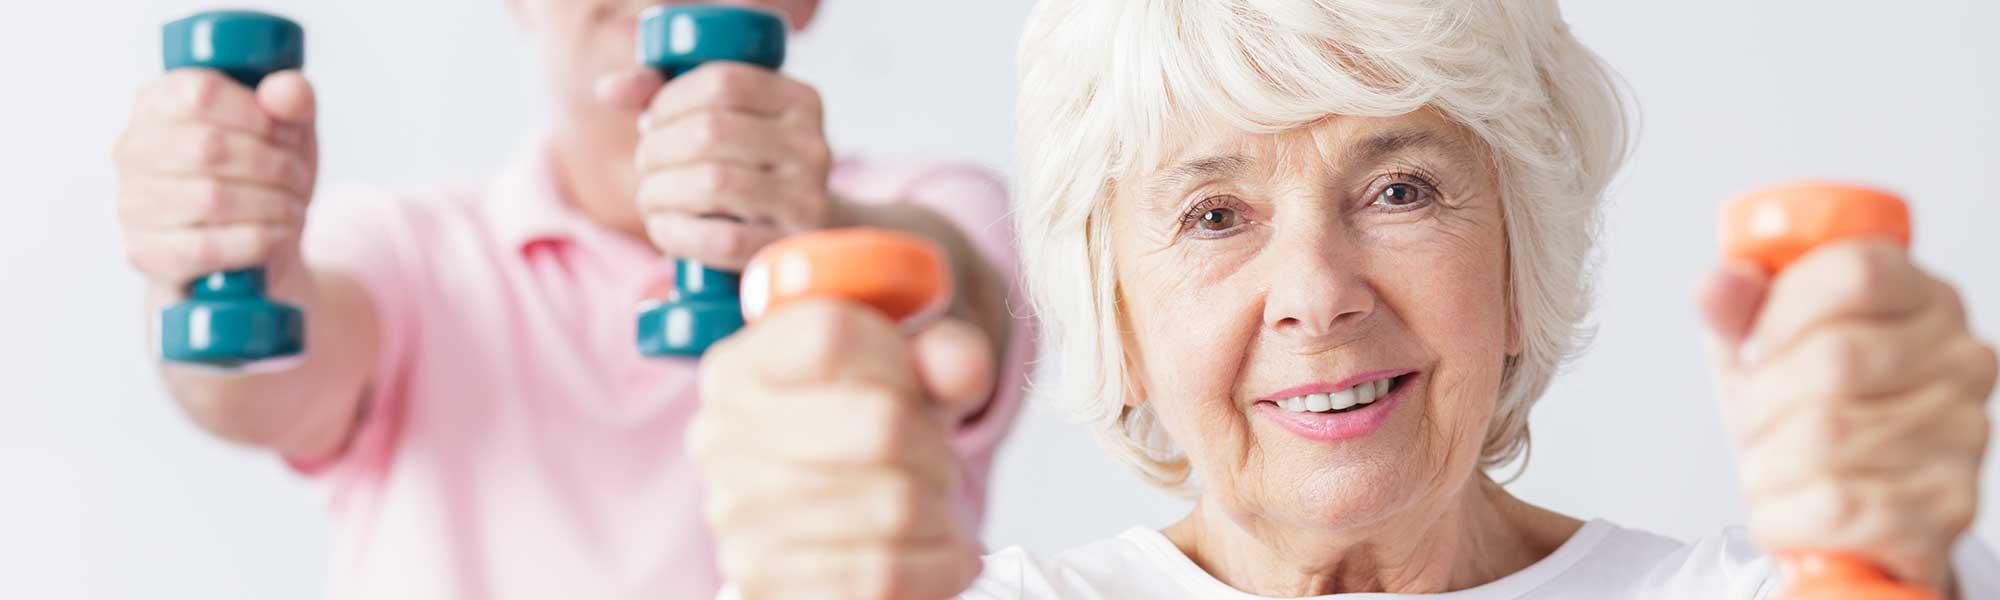 9 activités physiques à essayer après 60 ans